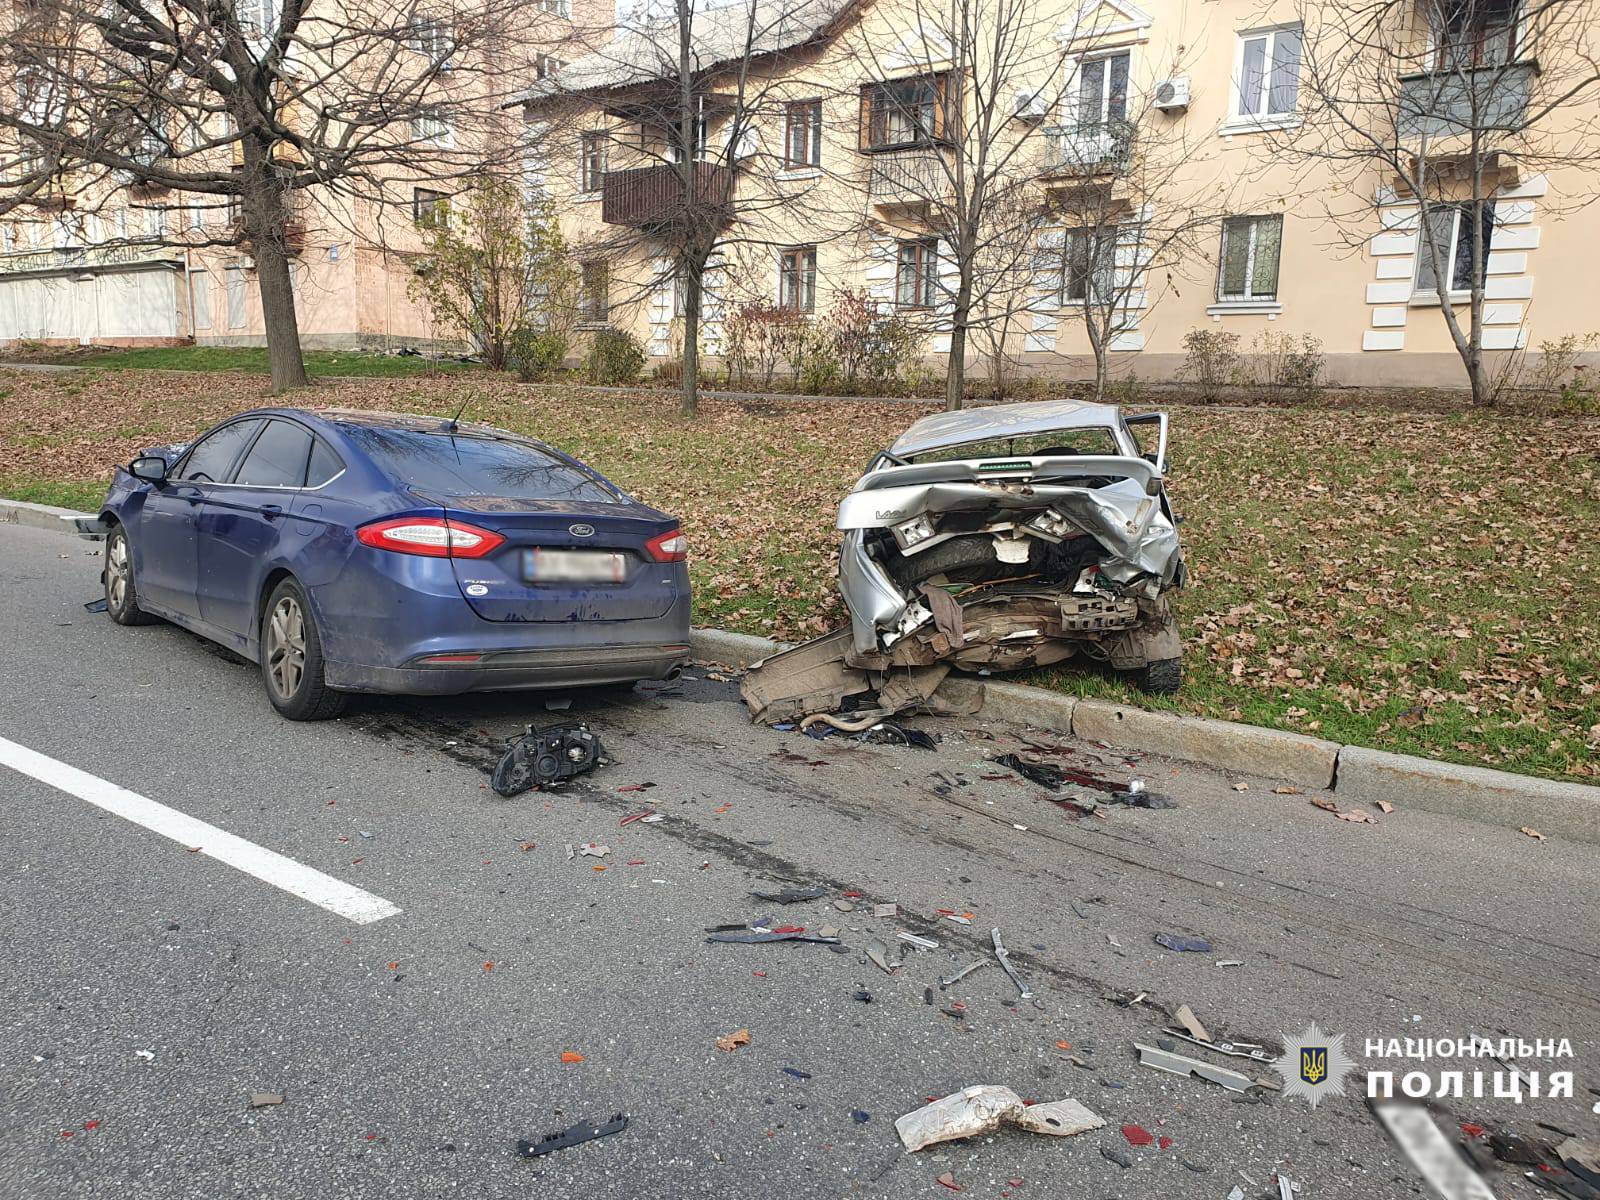 Зіткнення автомобілів «Ford» та «ВАЗ» сталося 10 листопада у Харкові